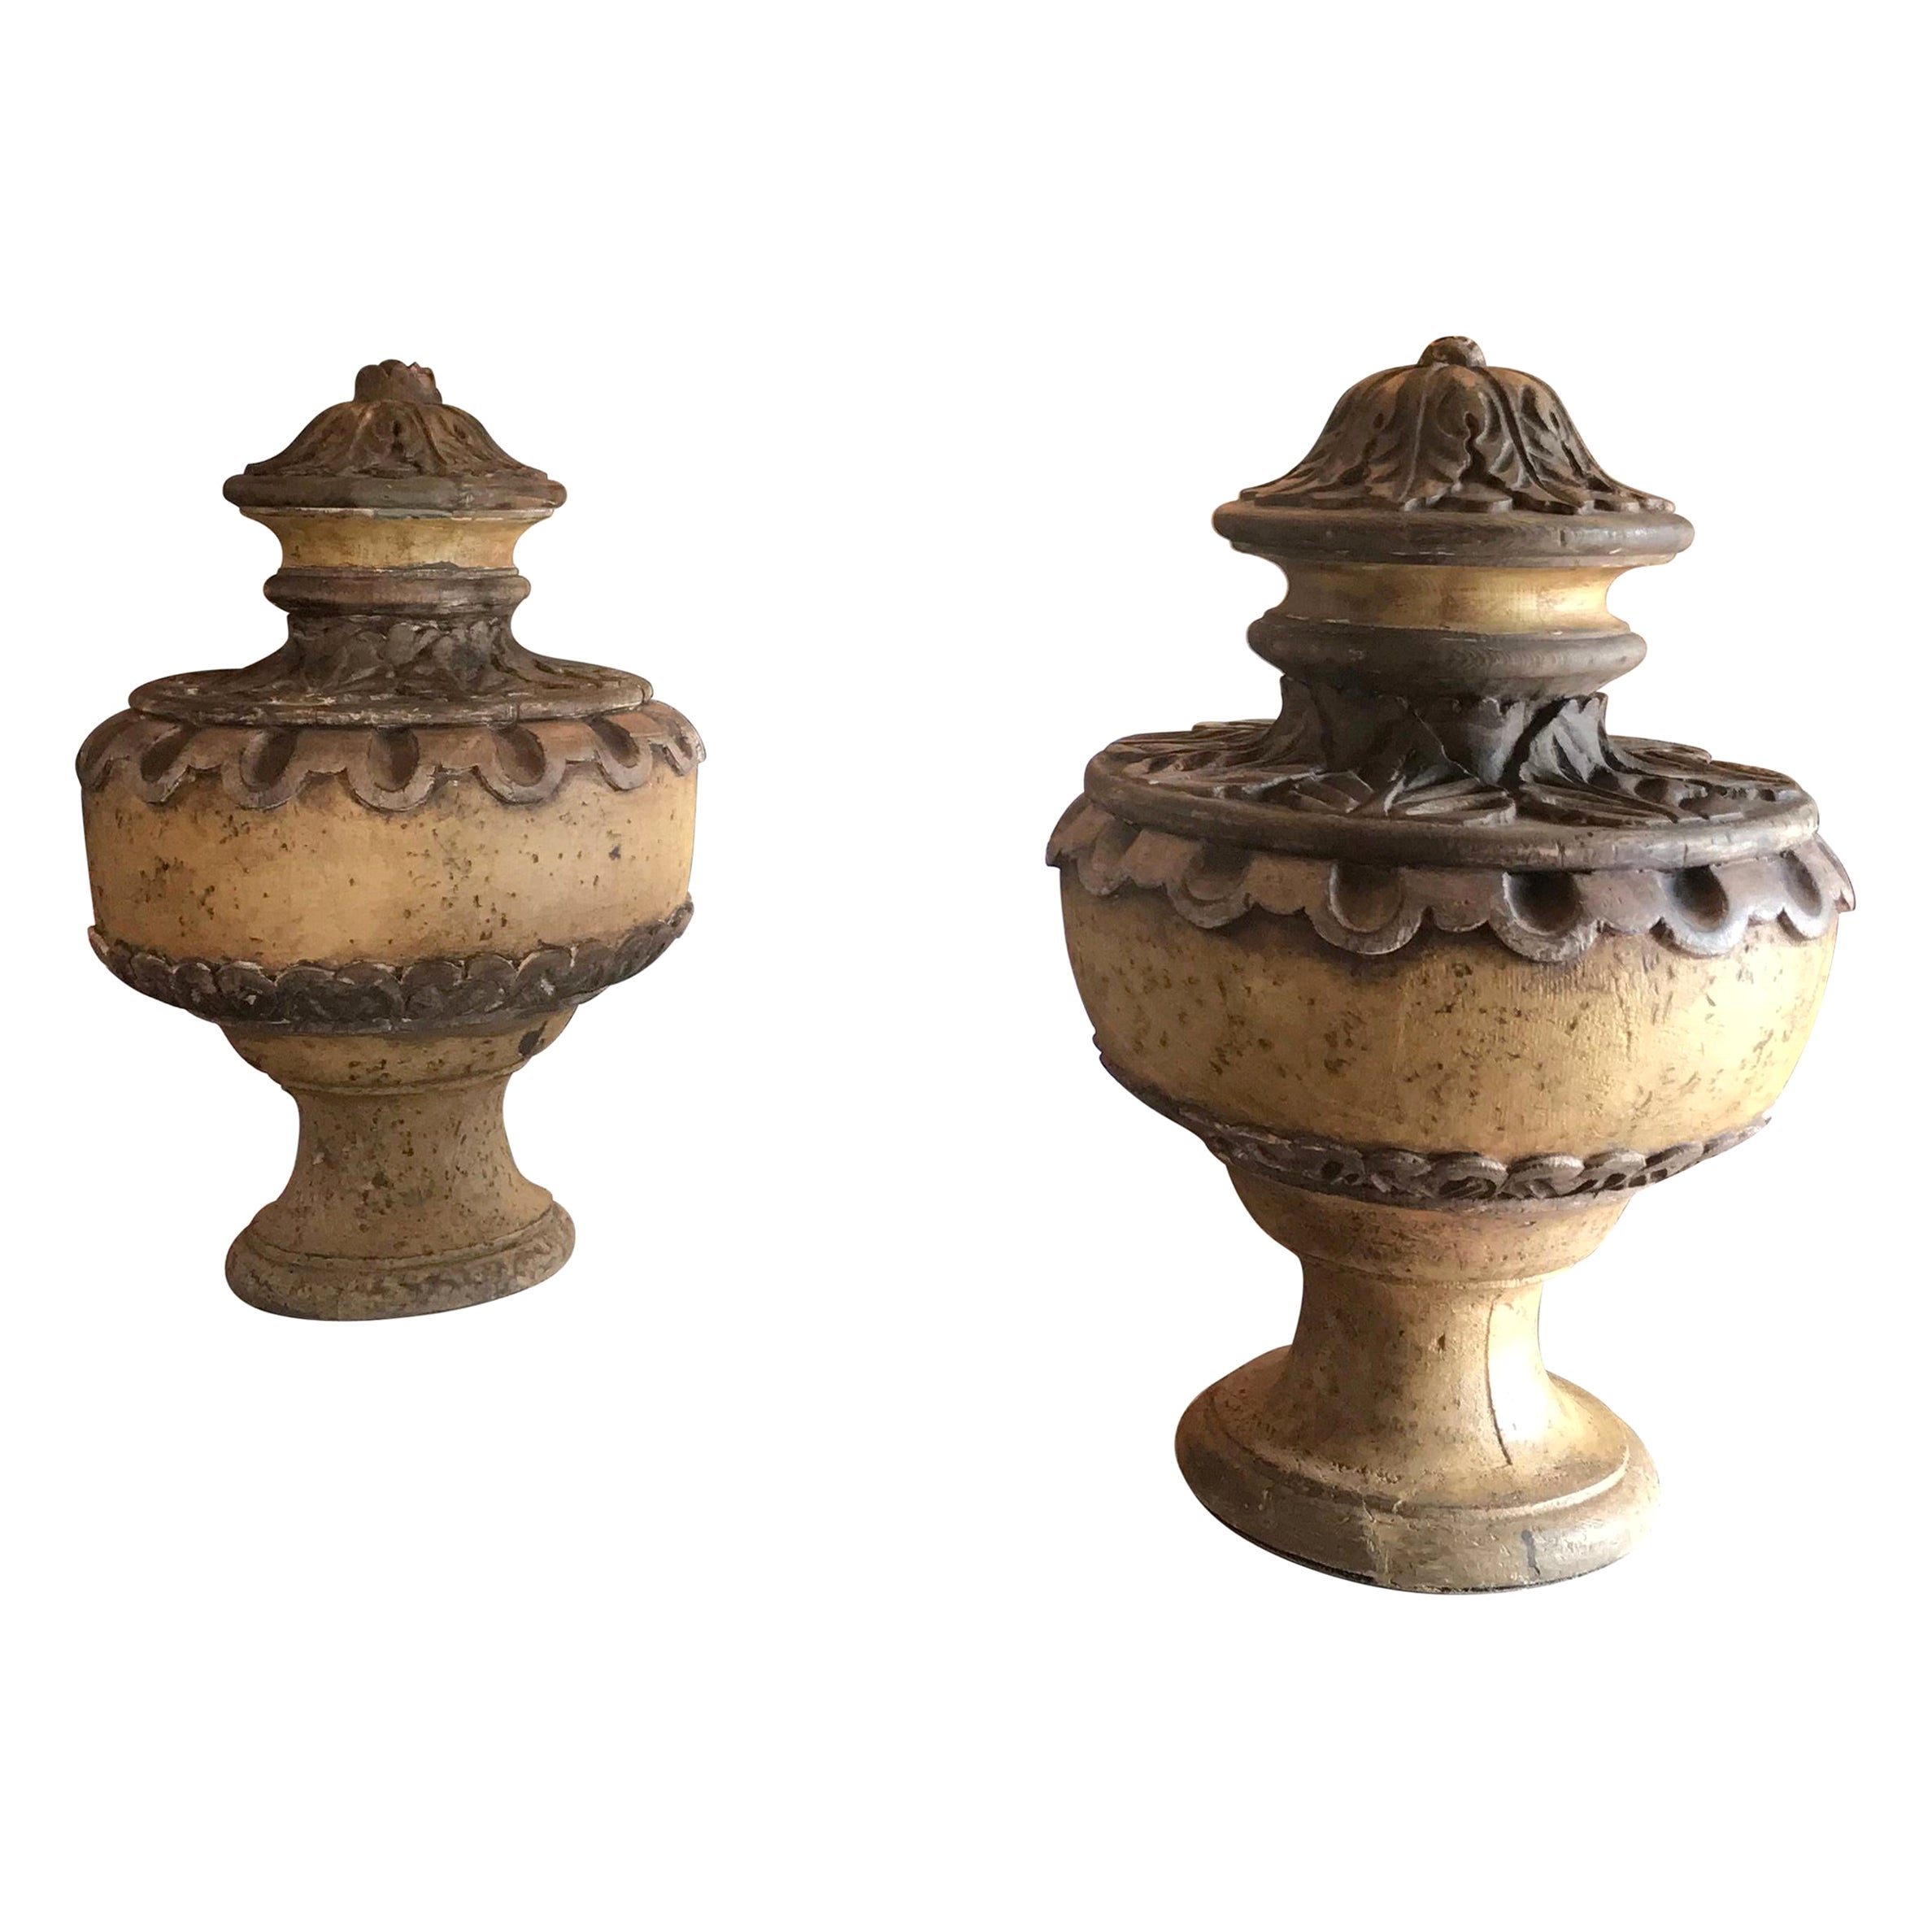 Paar handgeschnitzte Vasen in Form eines Tafelaufsatzes aus Holz, Vasenform, Urnen, Antiques Los Angeles im Angebot